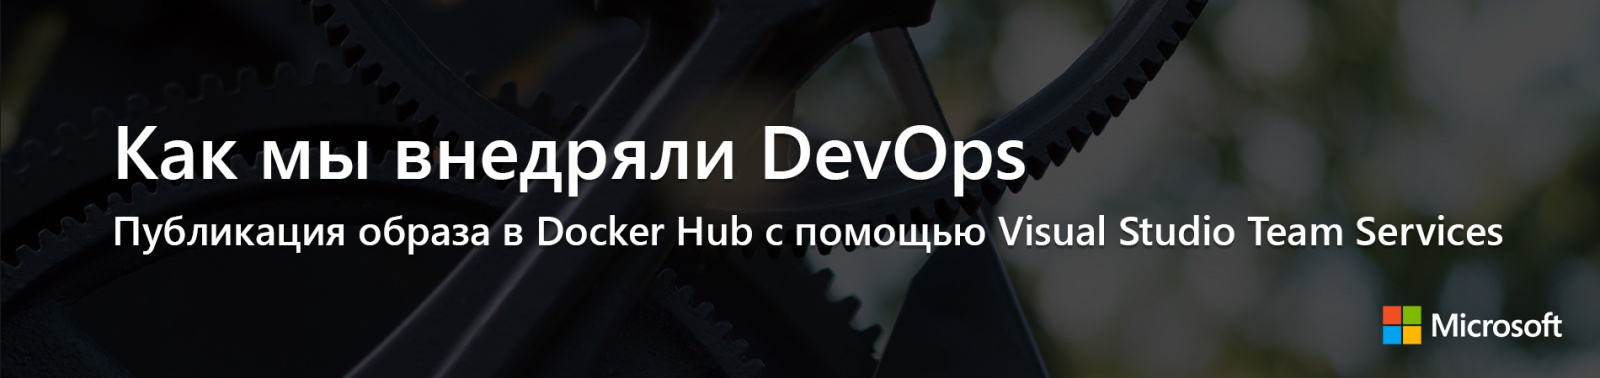 Как мы внедряли DevOps: публикация образа в Docker Hub с помощью Visual Studio Team Services - 1